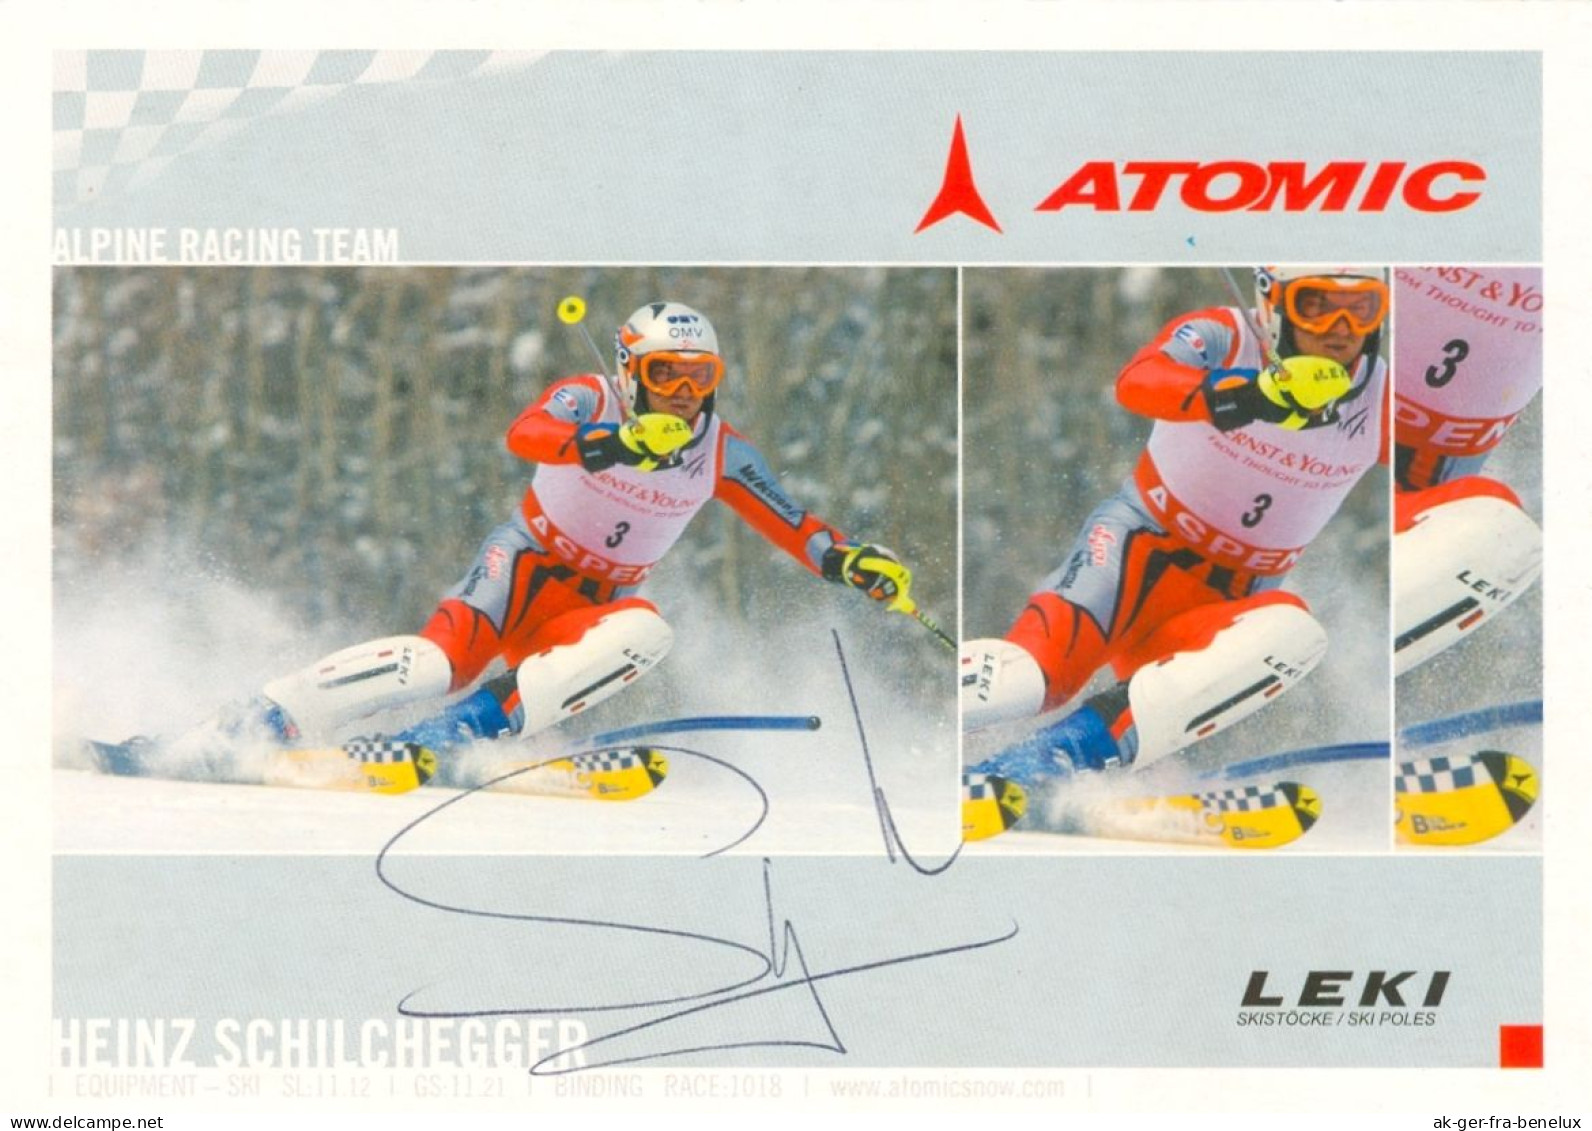 Autogramm Atomic AK Skifahrer Ski Alpin Heinz Schilchegger Radstadt Salzburg Obertauern Knittelfeld Österreich Austria - Wintersport